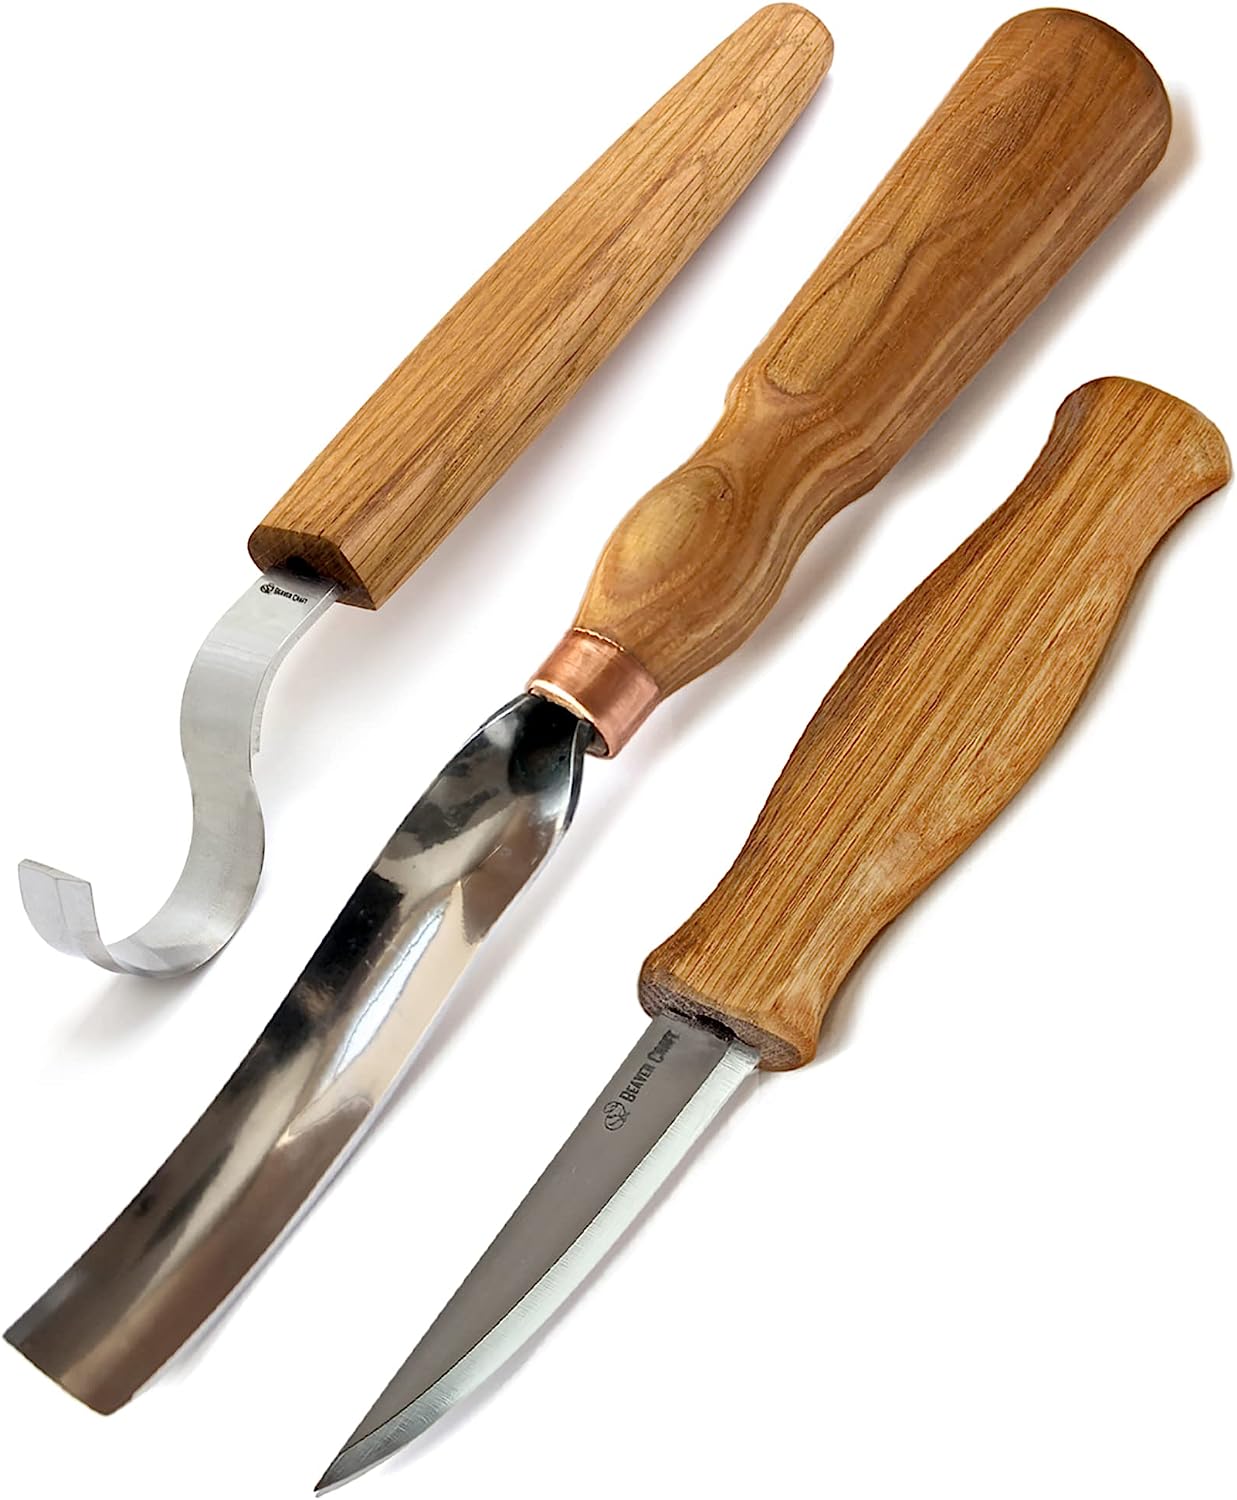 BeaverCraft Wood Carving Knives Kit Spoon Carving Tools S14 - Spoon Hook Knife Wood Carving Chisels Set Bowl Gouge - Whittling Knives Wood Whittling Kit for Beginners - Hobby Carving Knife Set